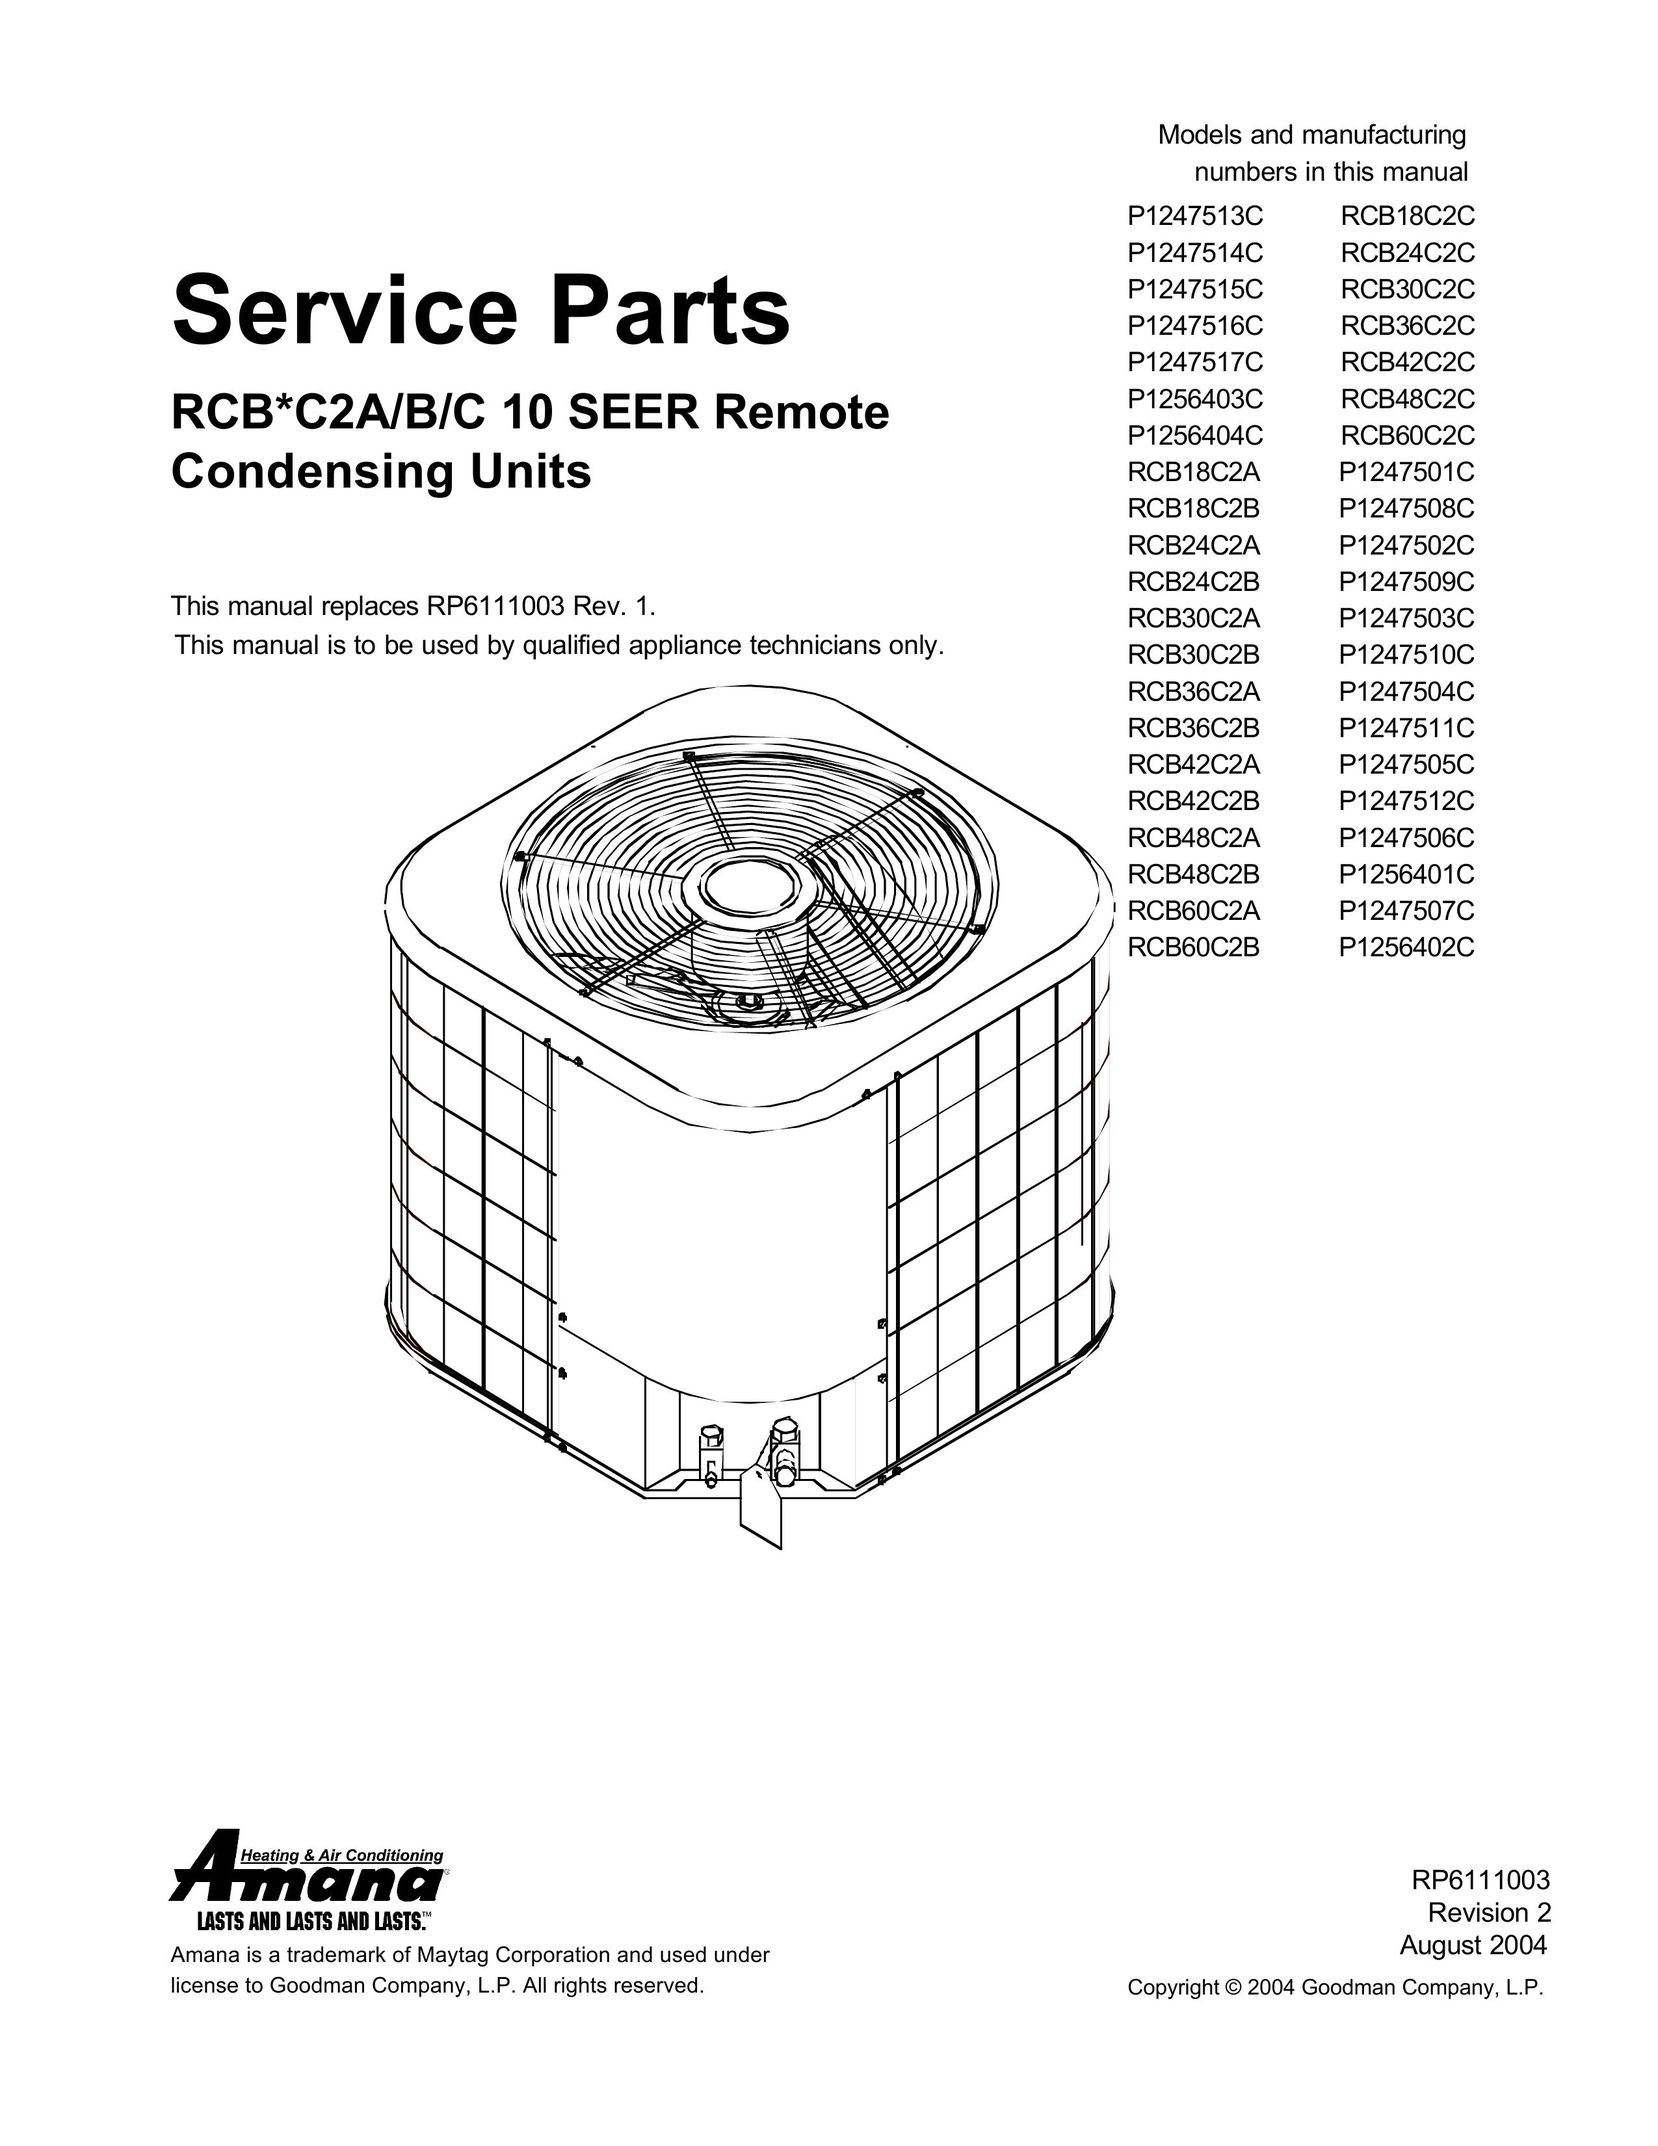 Amana RCB18C2CP1247513C Air Conditioner User Manual